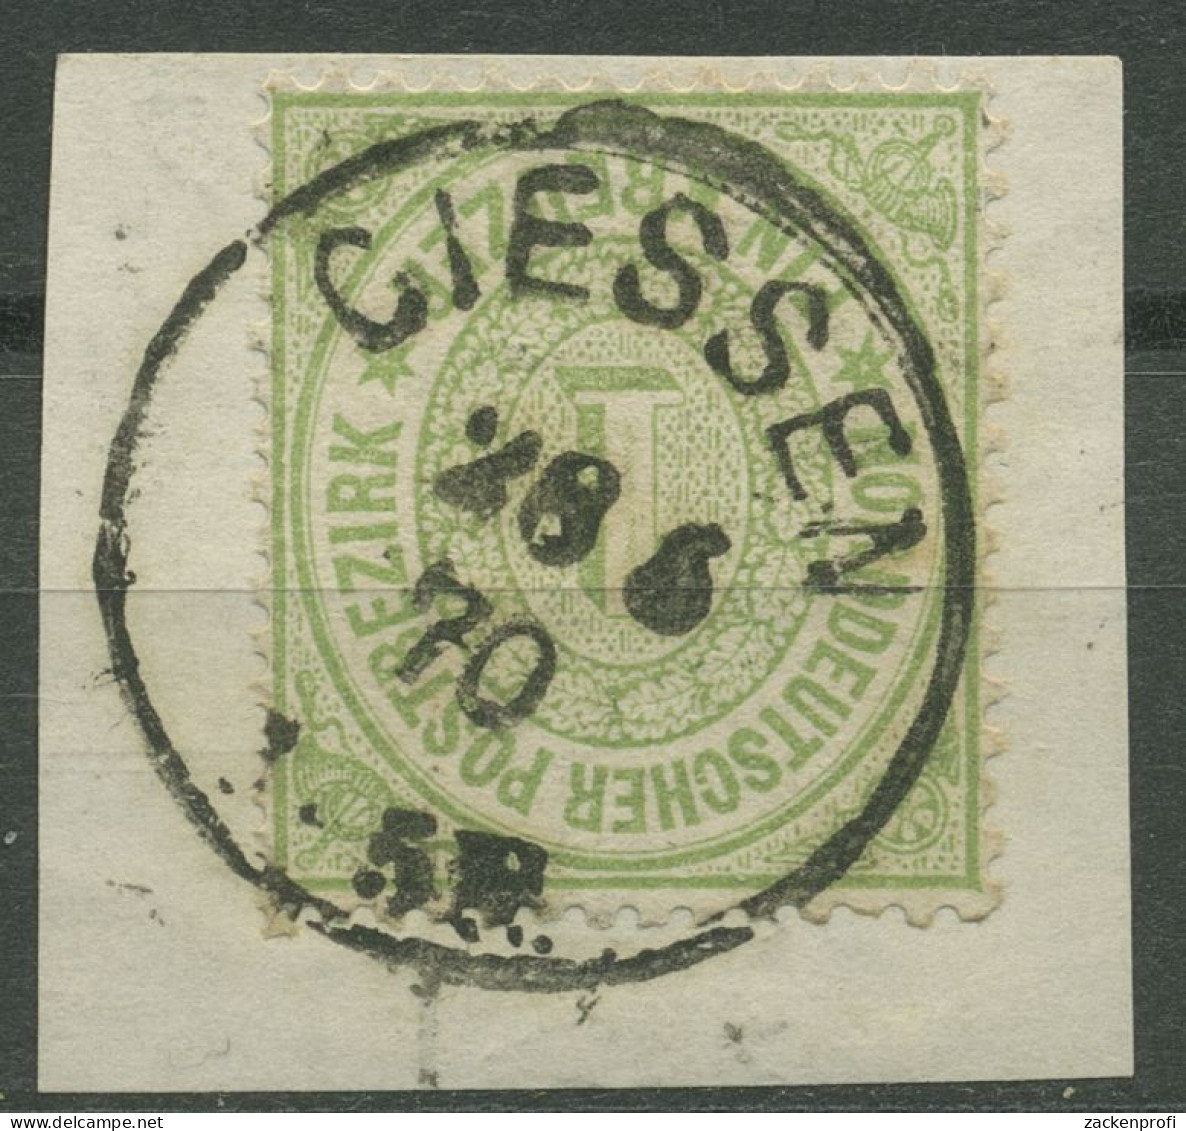 Nordd. Postbezirk NDP 1869 1 Kreuzer 19 Mit K1-Stempel GIESSEN, Briefstück - Used